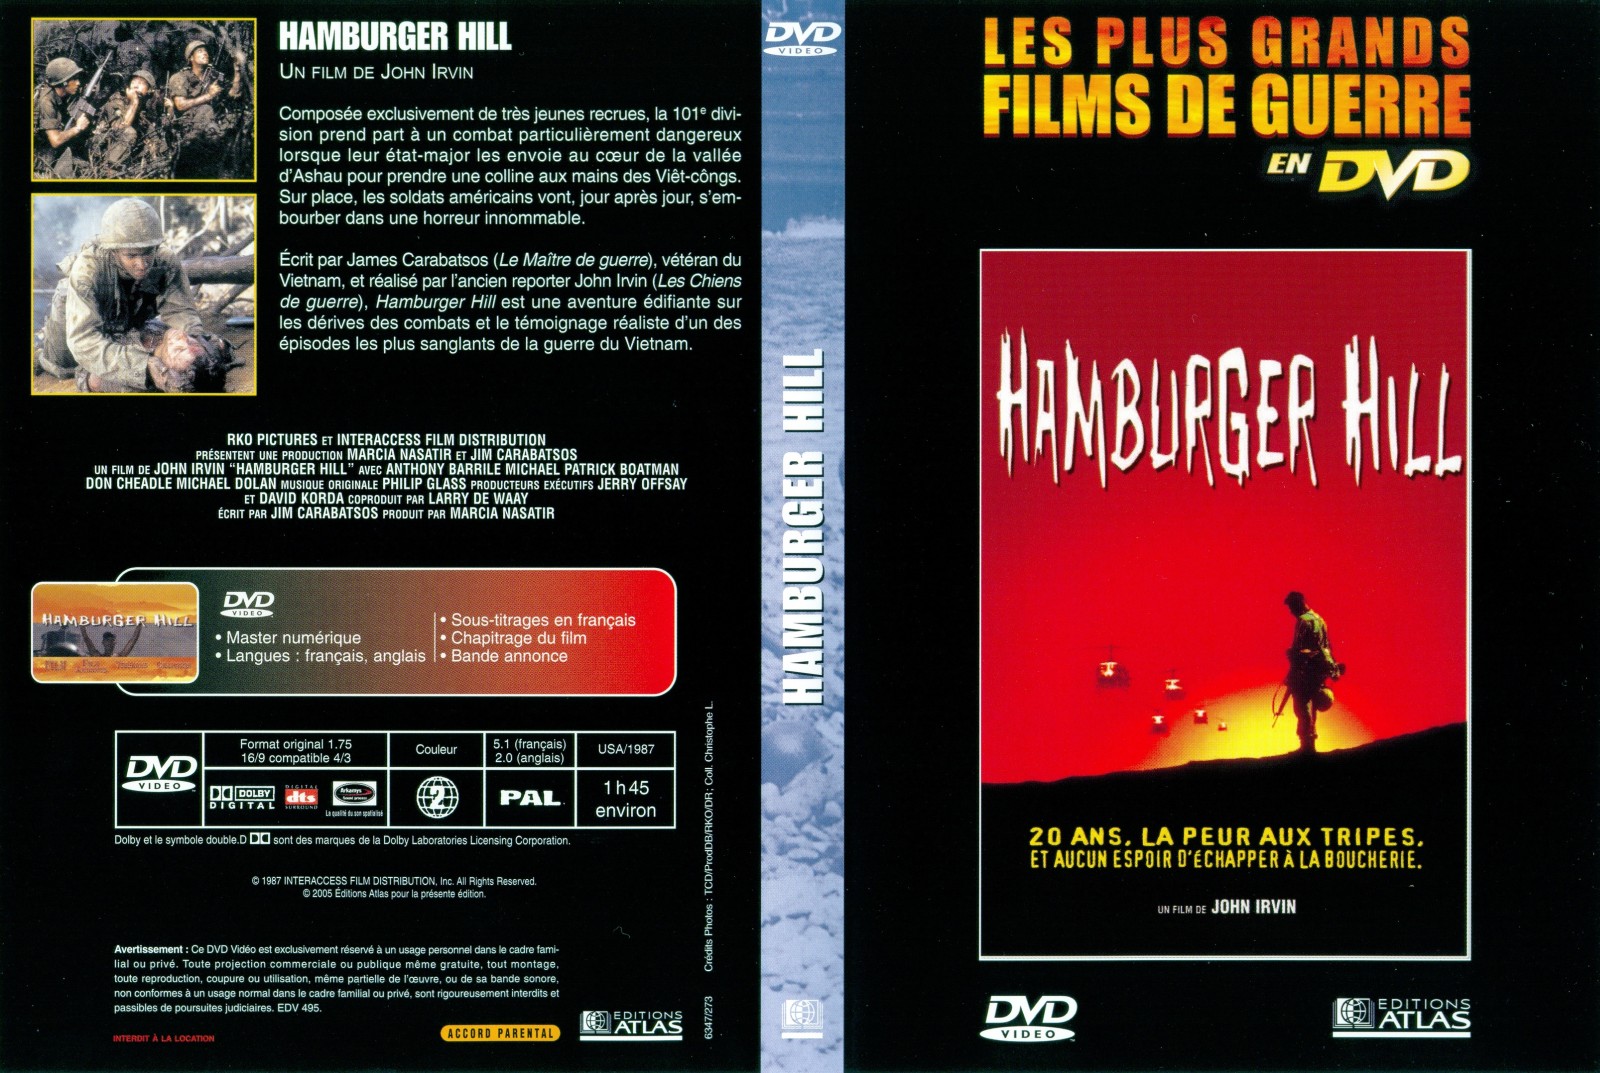 Jaquette DVD Hamburger Hill v2